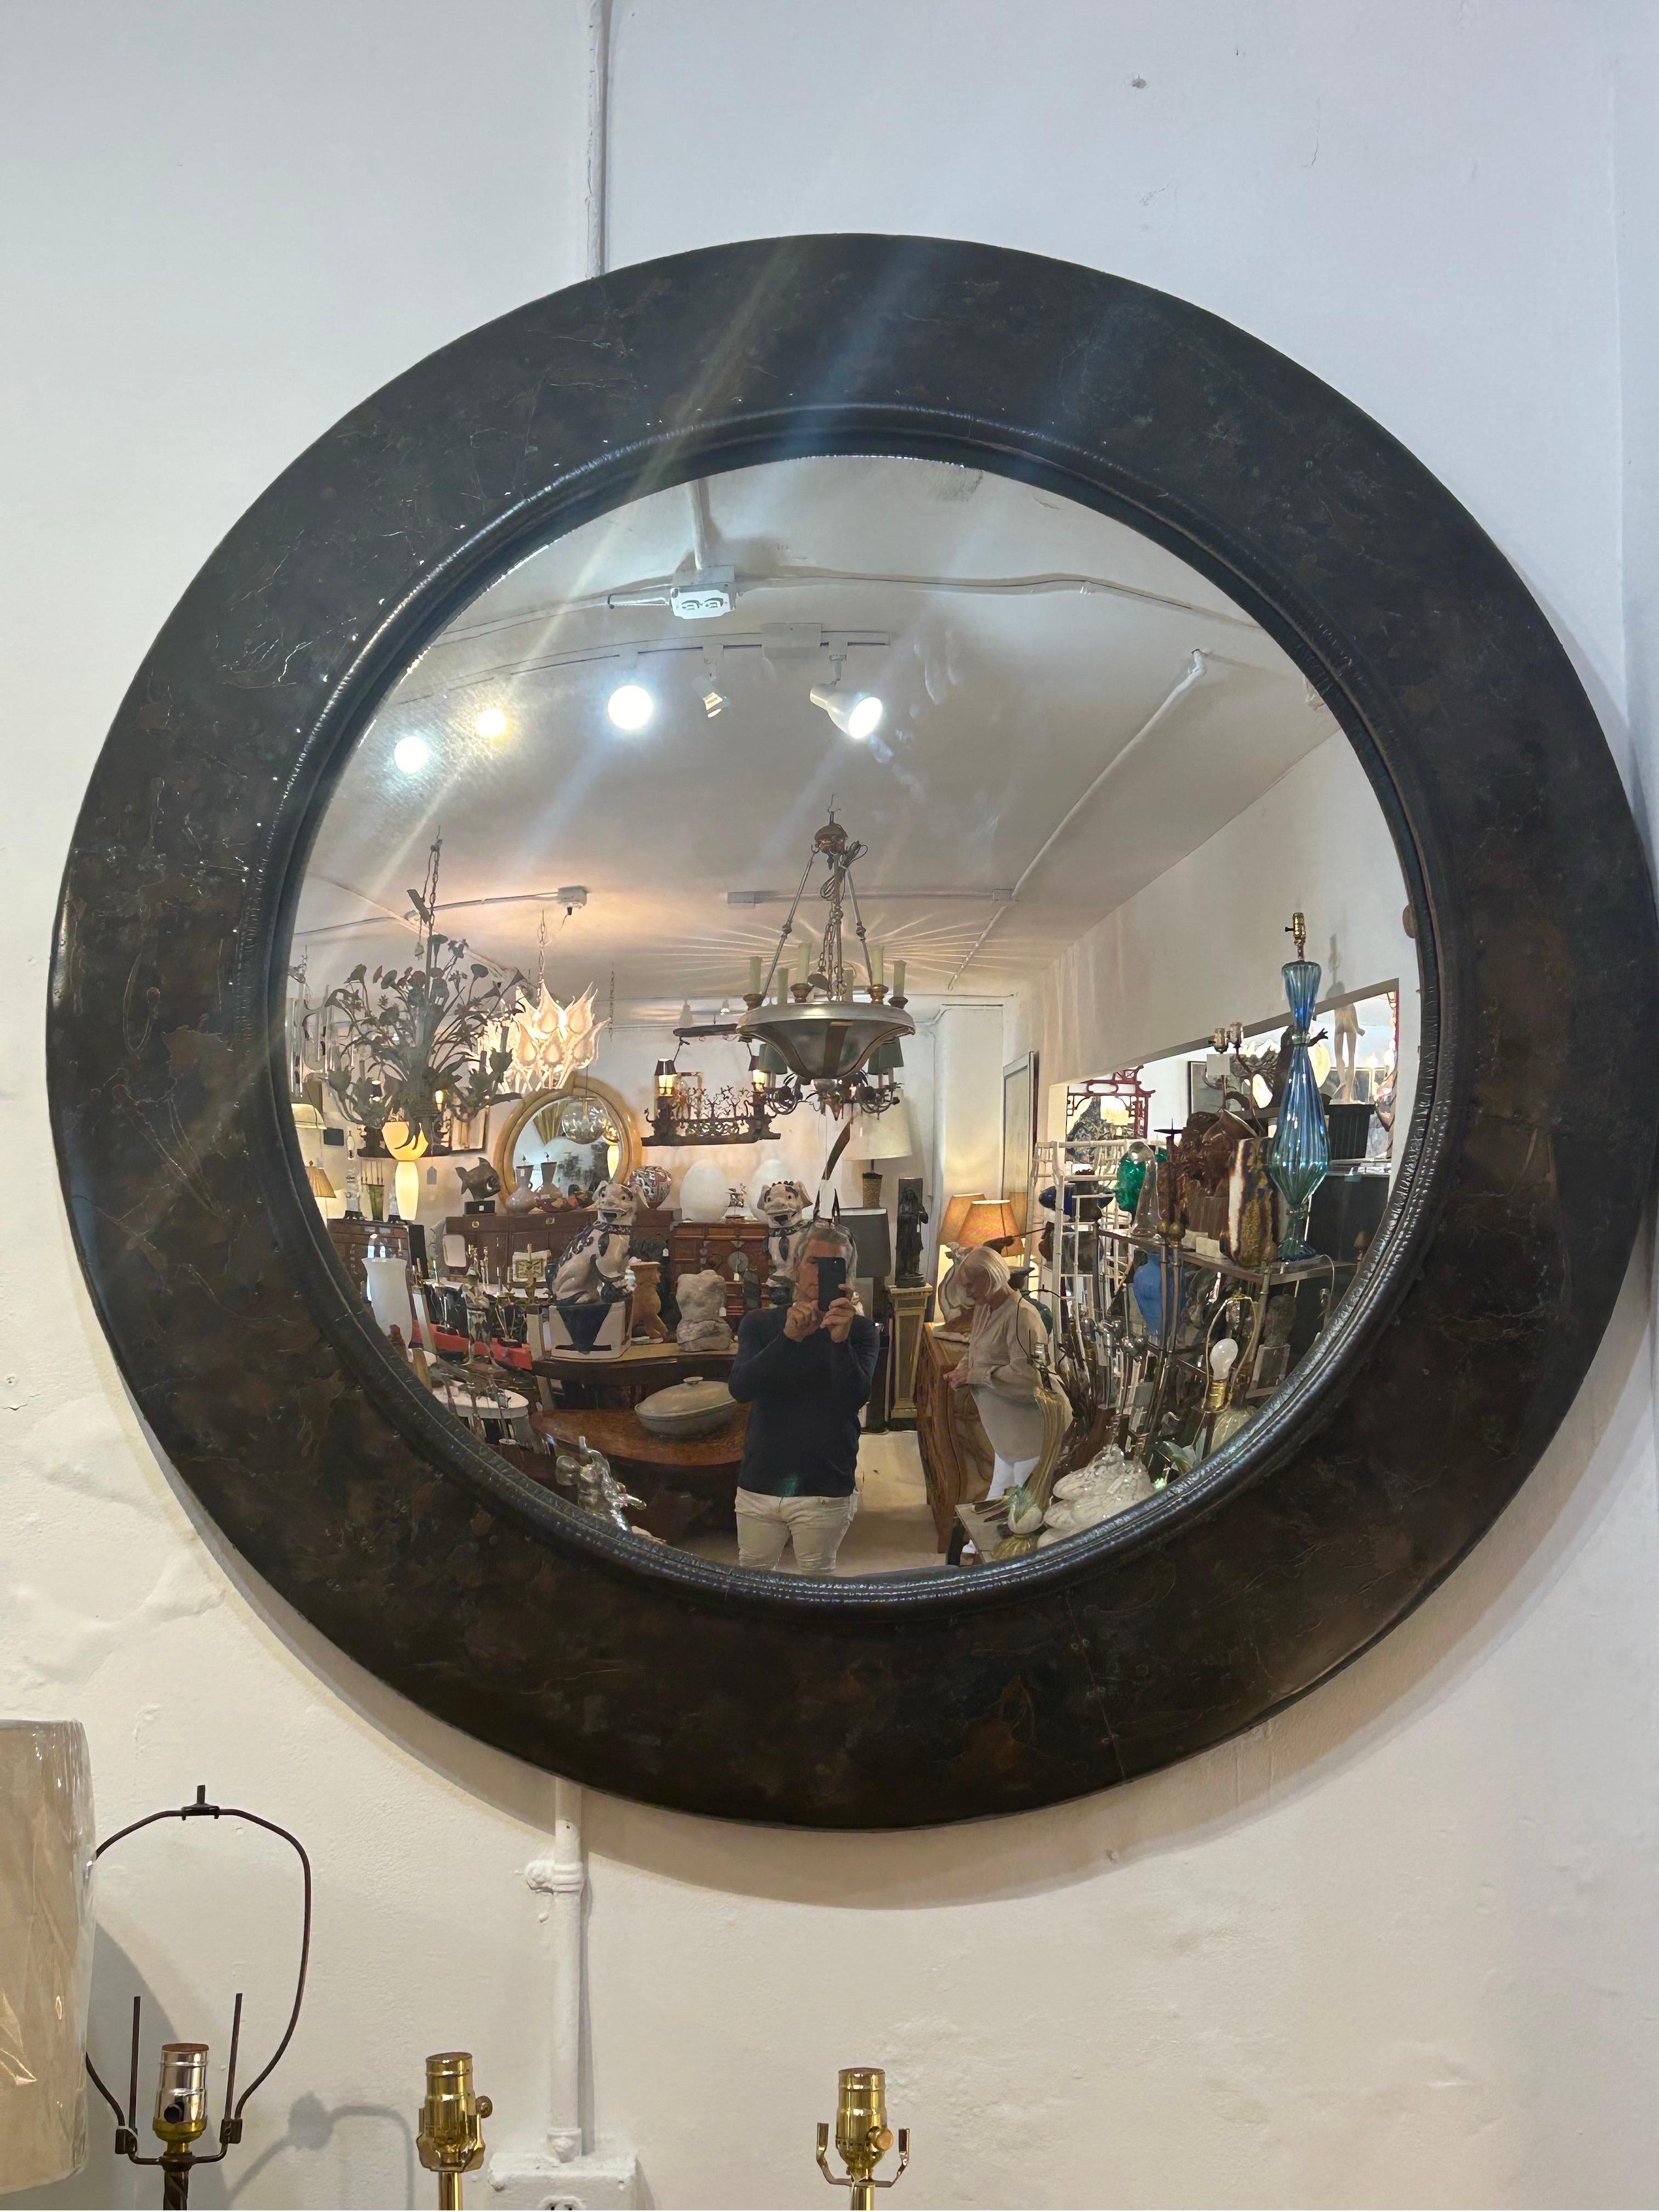 Eine große seltene gehämmert Patchwork Metallrahmen konvexen Spiegel... Mit Metall-Patchwork durch kleine Nägel verbunden hochwertige von Maitland Smith... erinnert an Paul Evans...